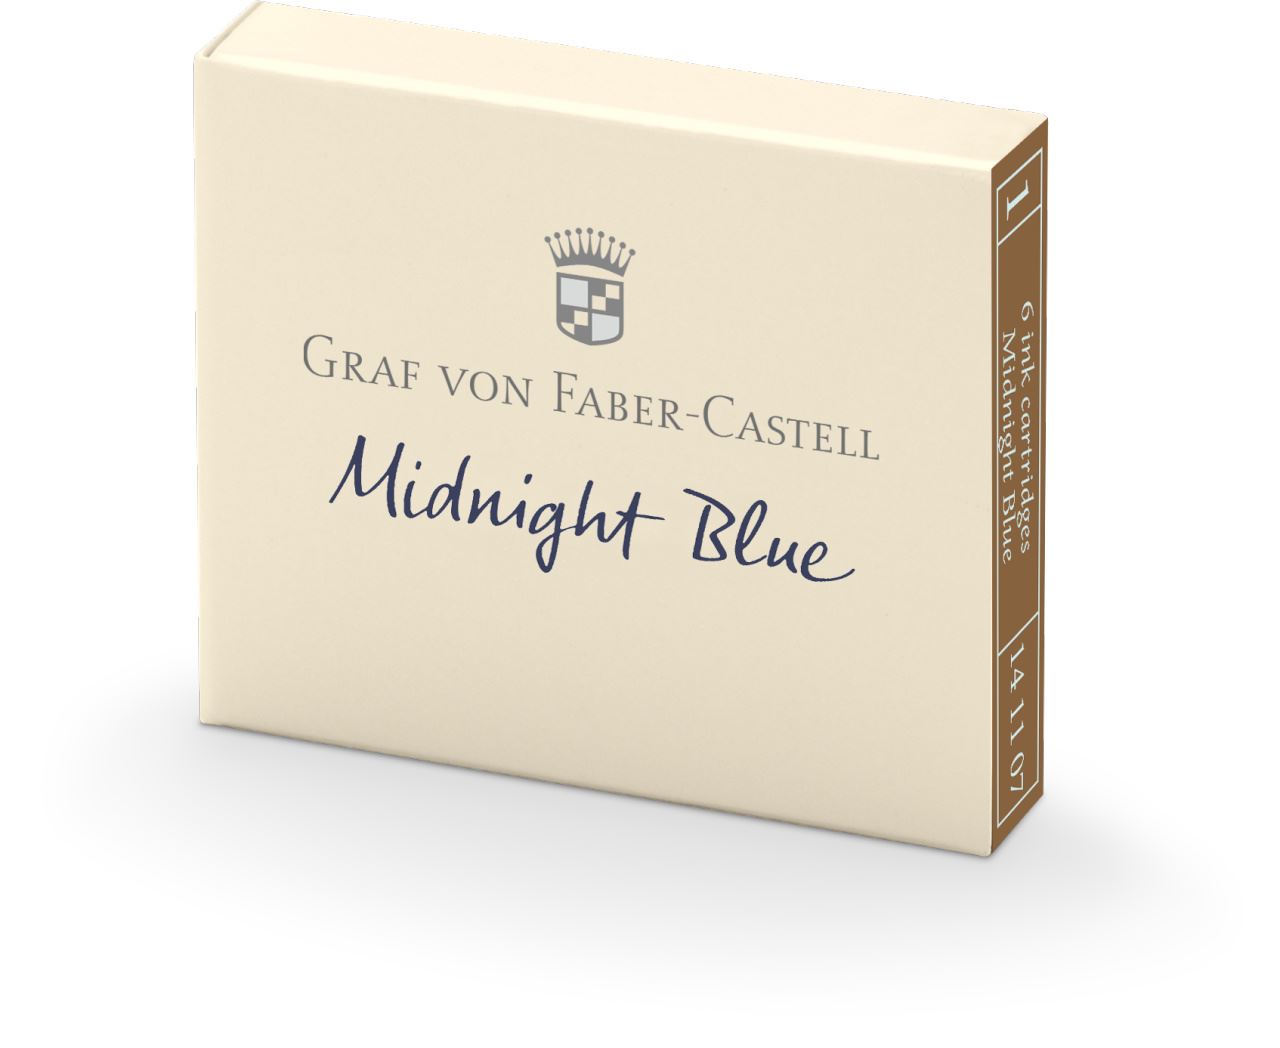 Graf-von-Faber-Castell - 6 ink cartridges, Midnight Blue